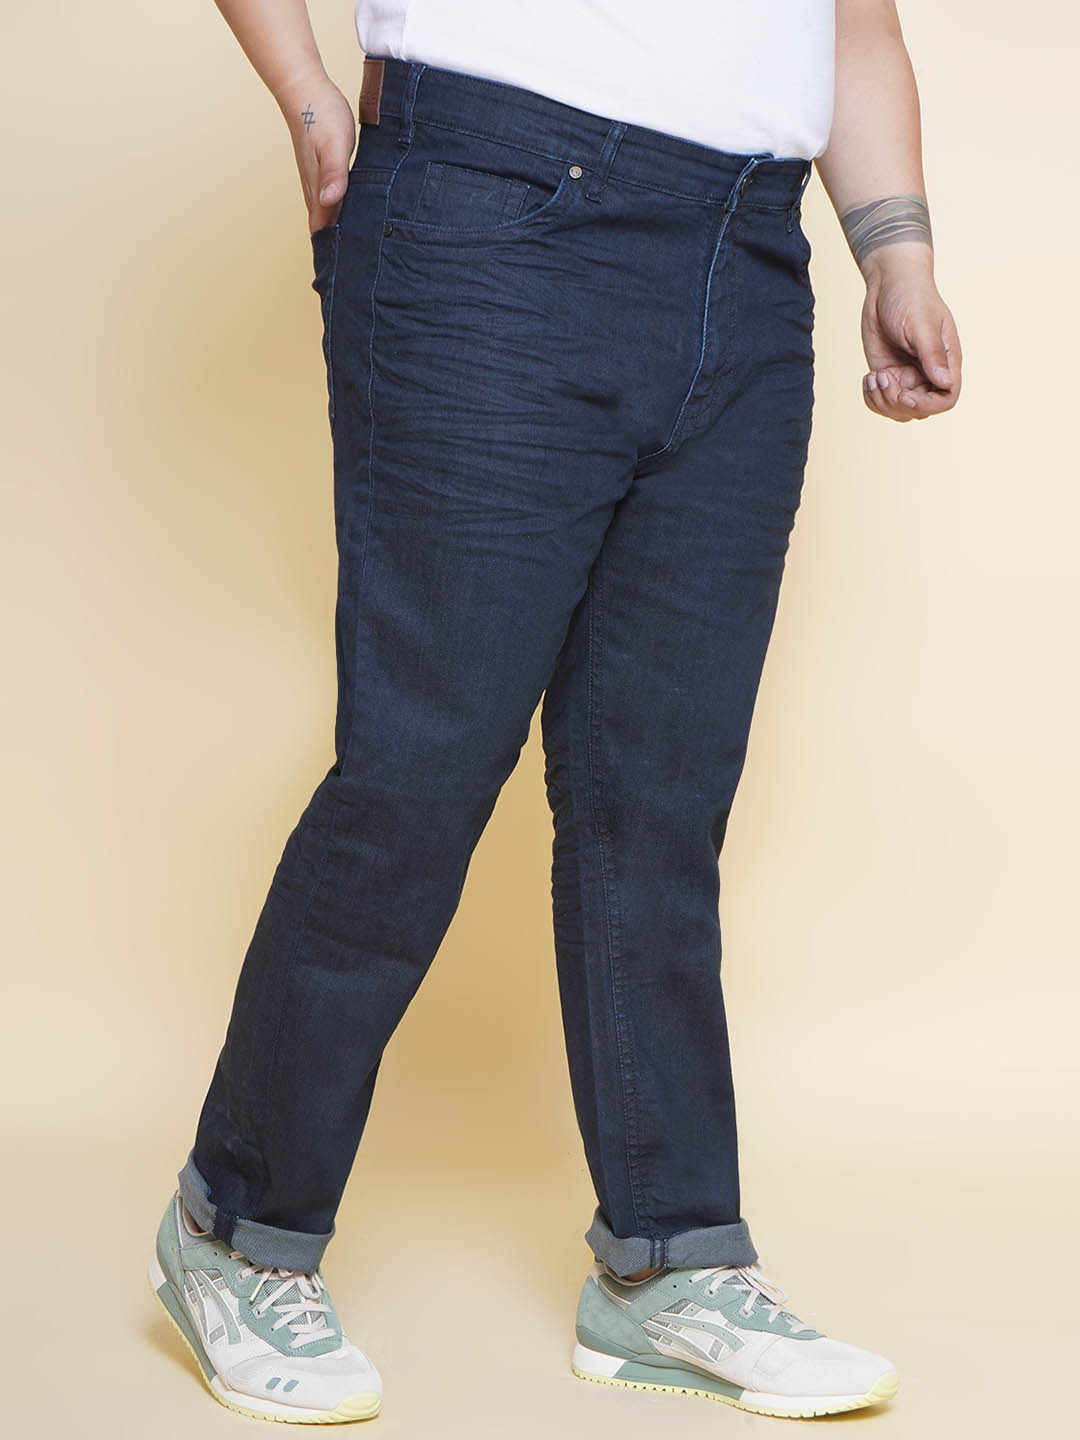 bottomwear/jeans/JPJ12363/jpj12363-3.jpg